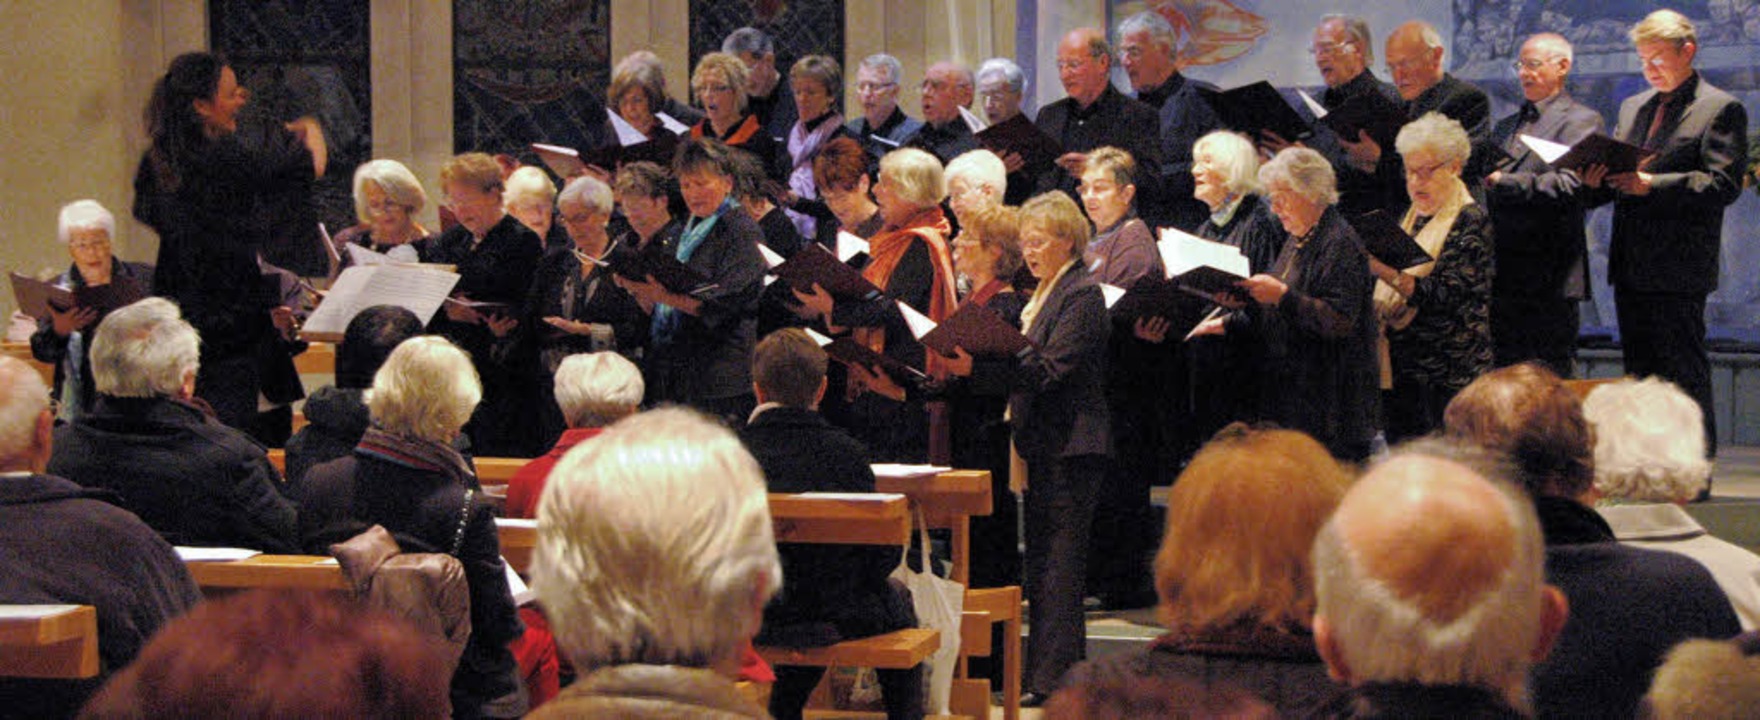 Die Freude auf das Fest von Christi Ge...e der Kirchenchor klangvoll in Szene.   | Foto: Ounas-Kräusel